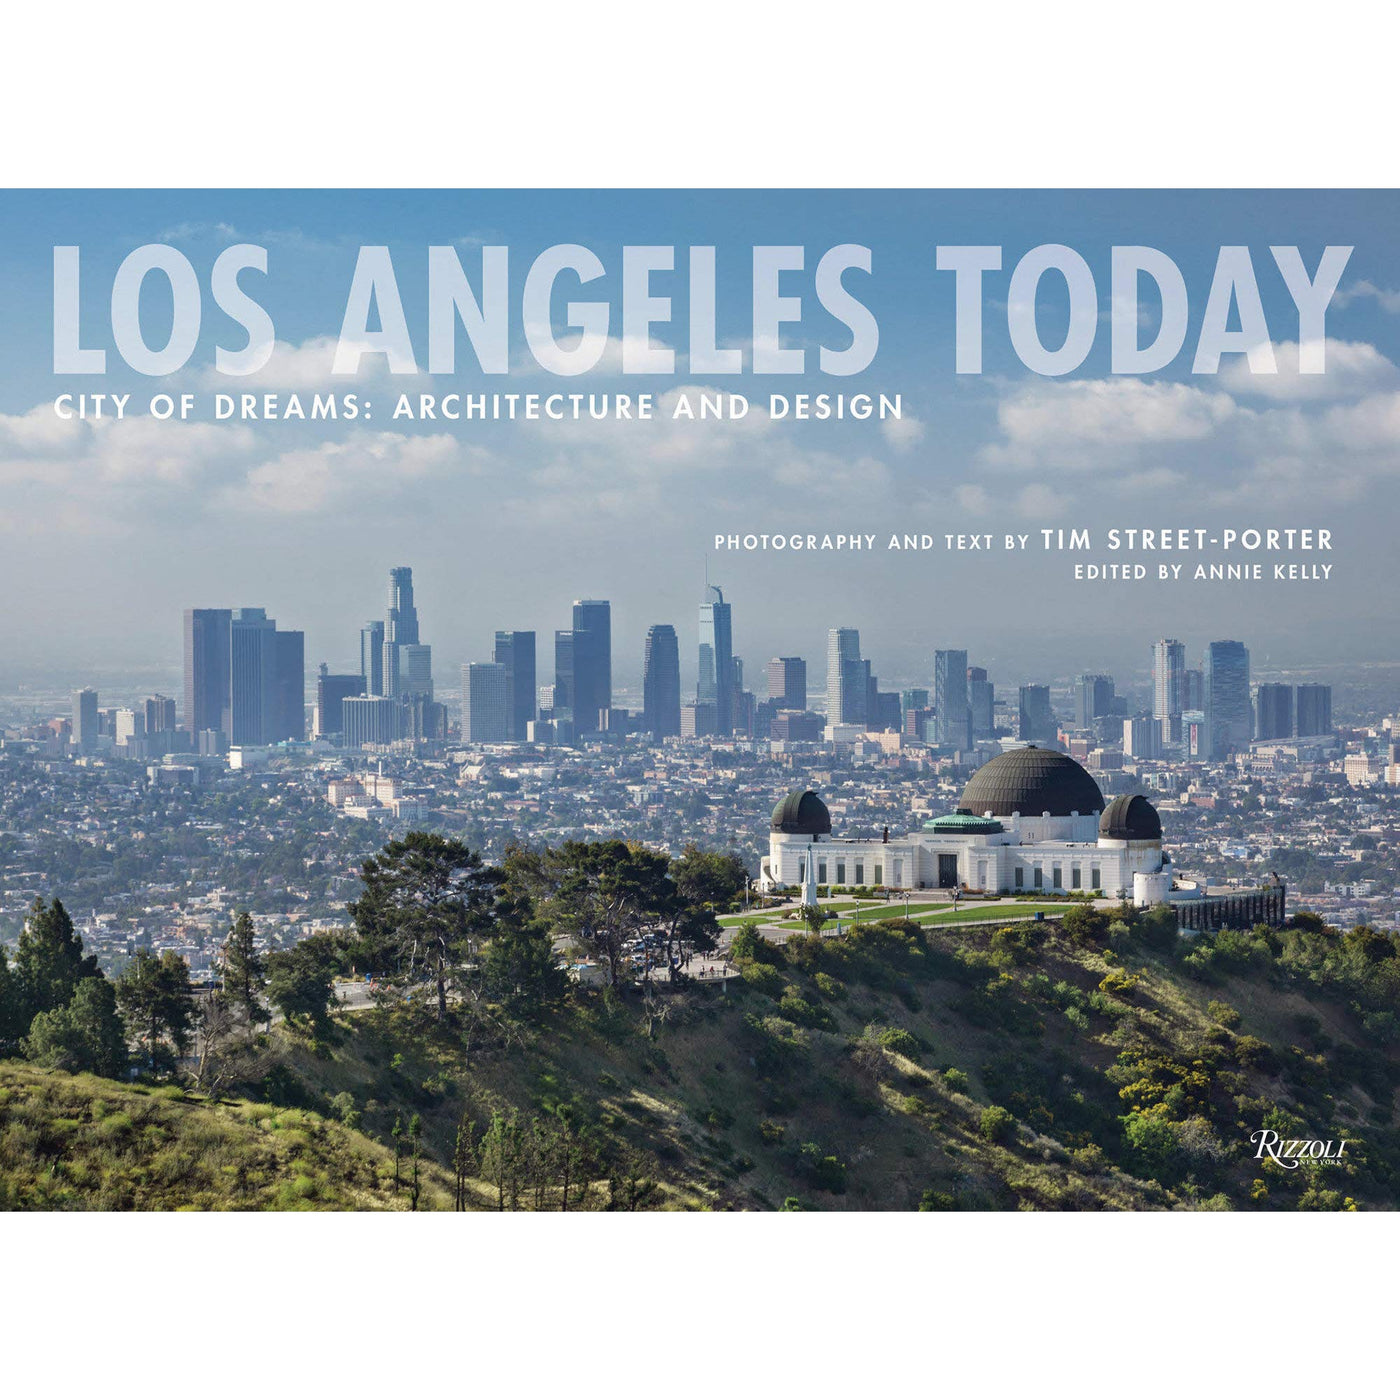 Los Angeles Today: City of Dreams